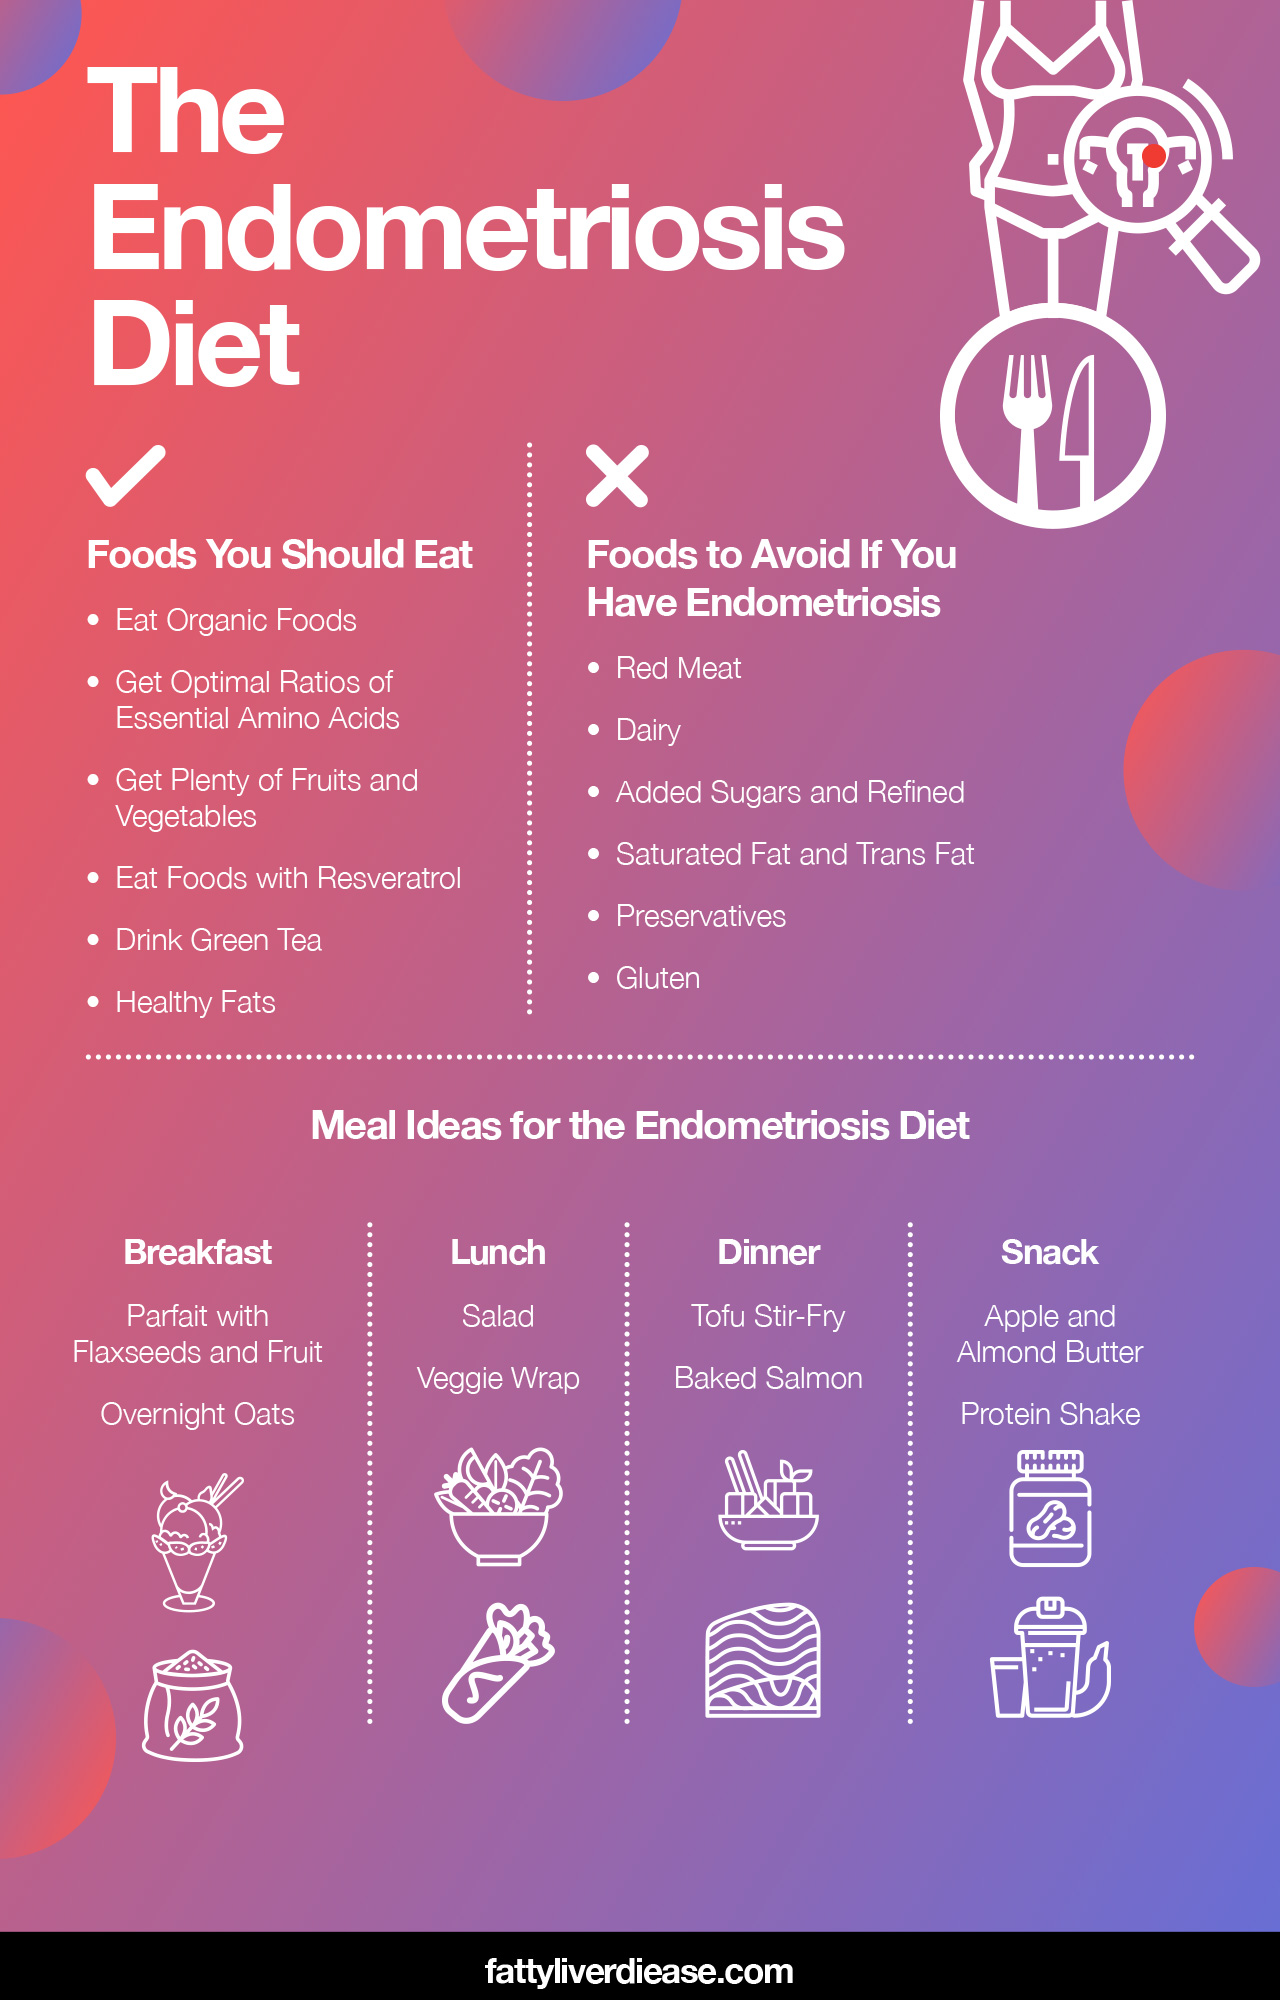 The Endometriosis Diet